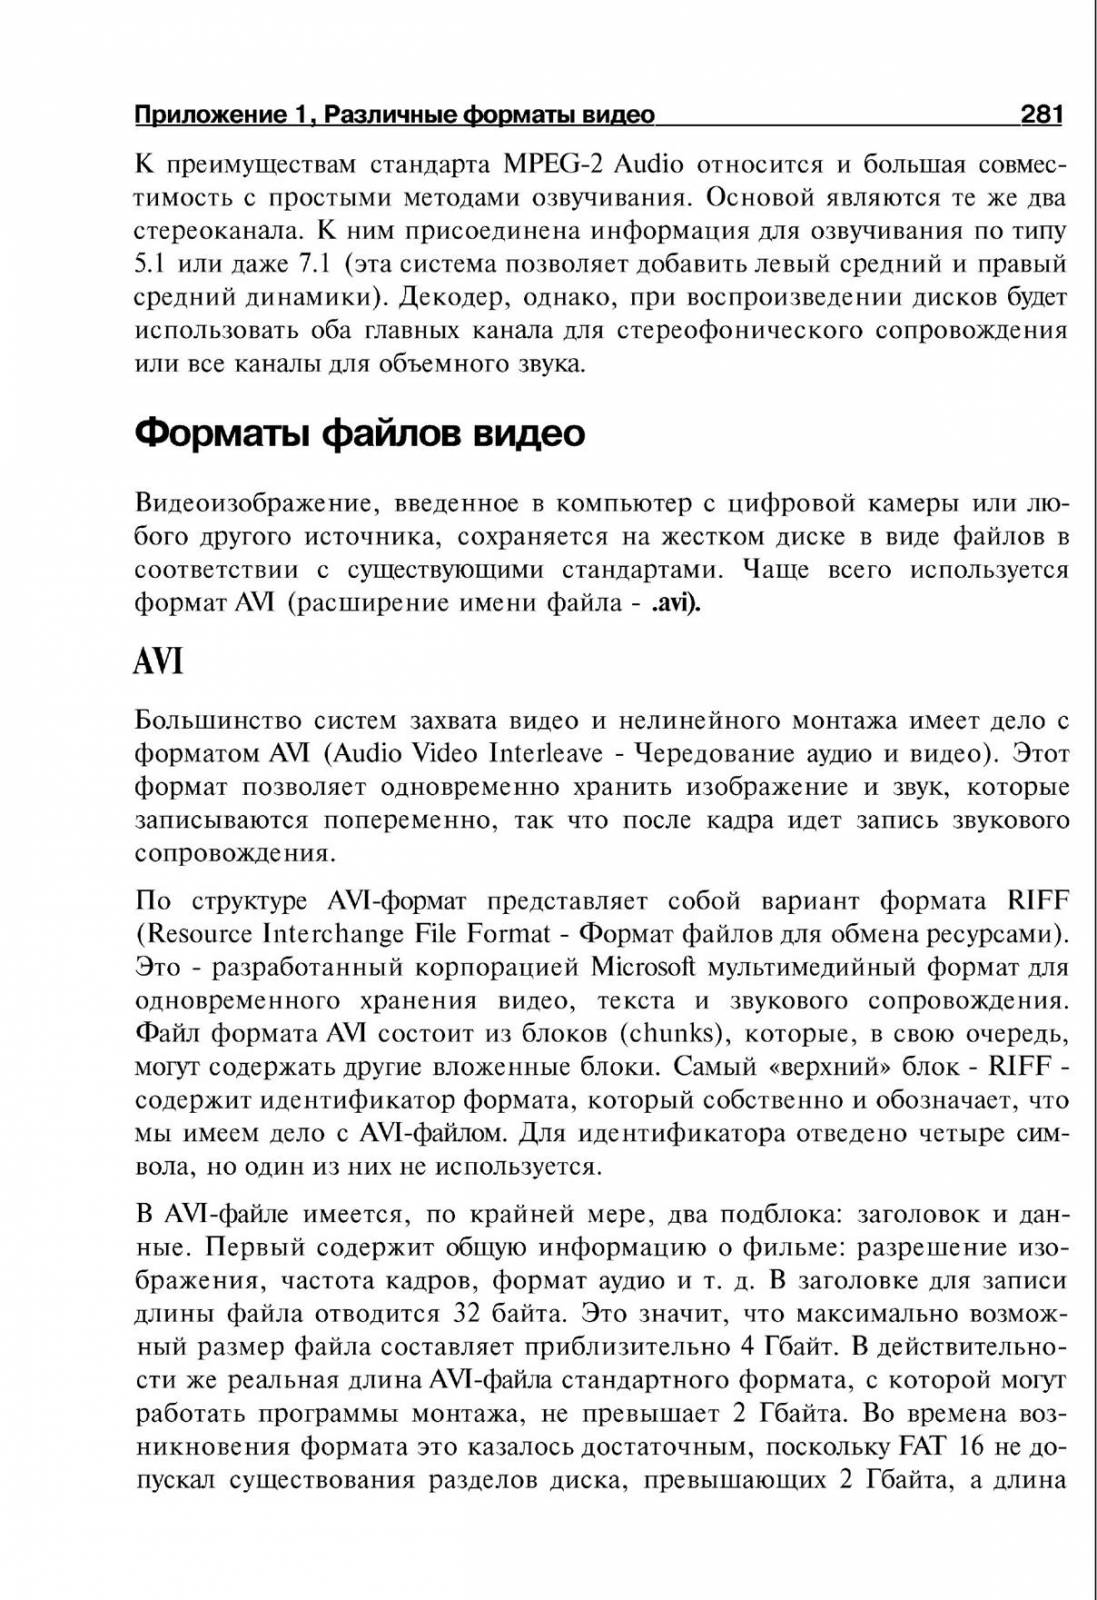 http://redaktori-uroki.3dn.ru/_ph/14/666415638.jpg